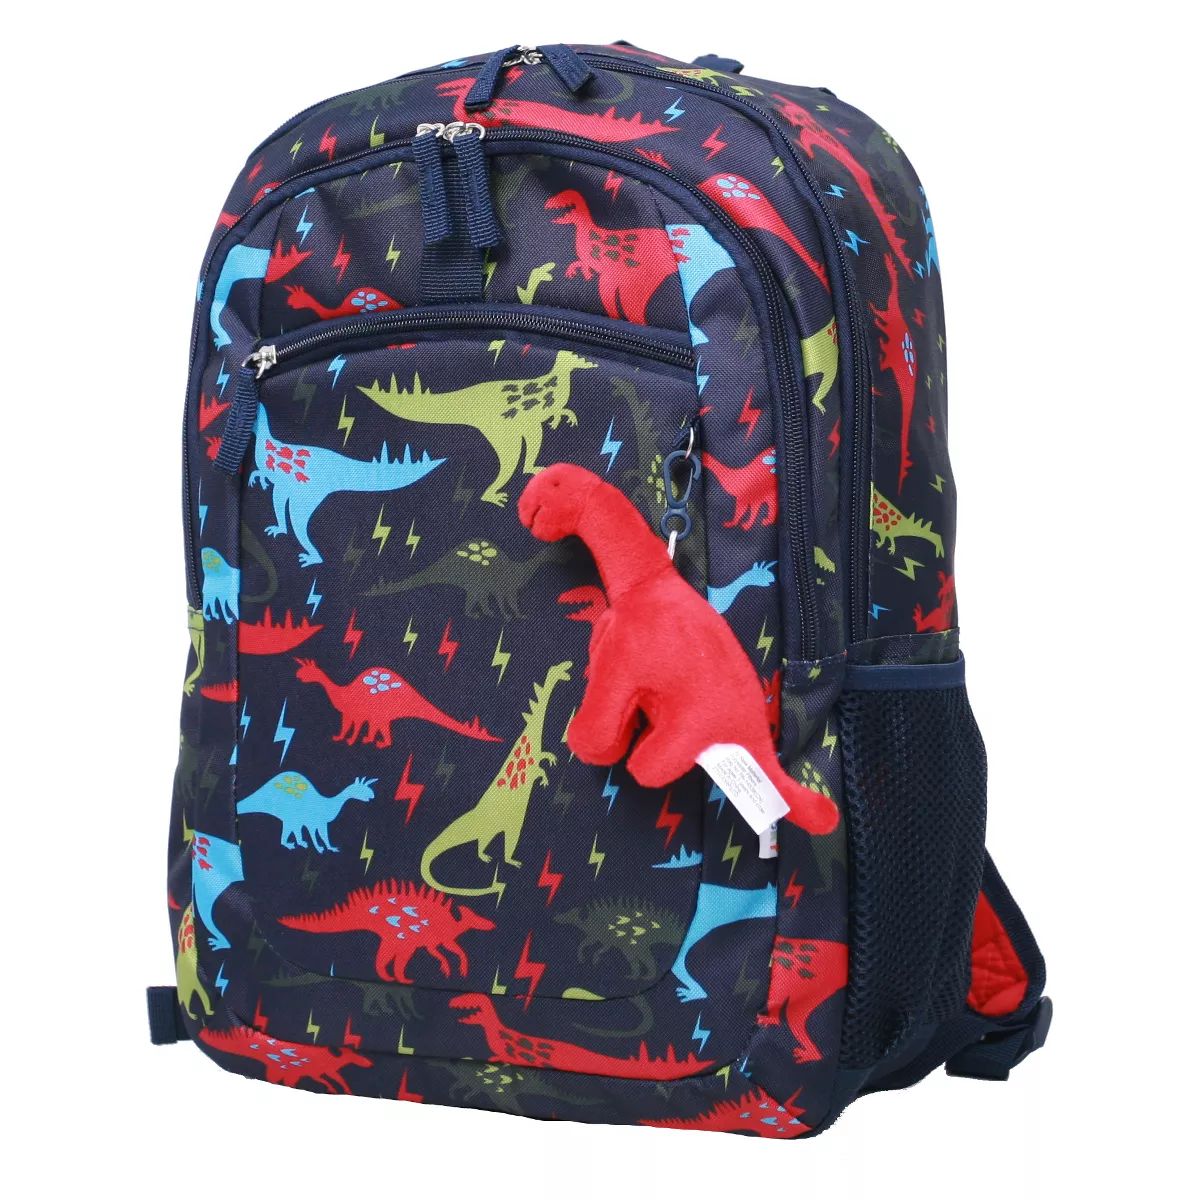 Crckt Kids' 16.5" Backpack | Target